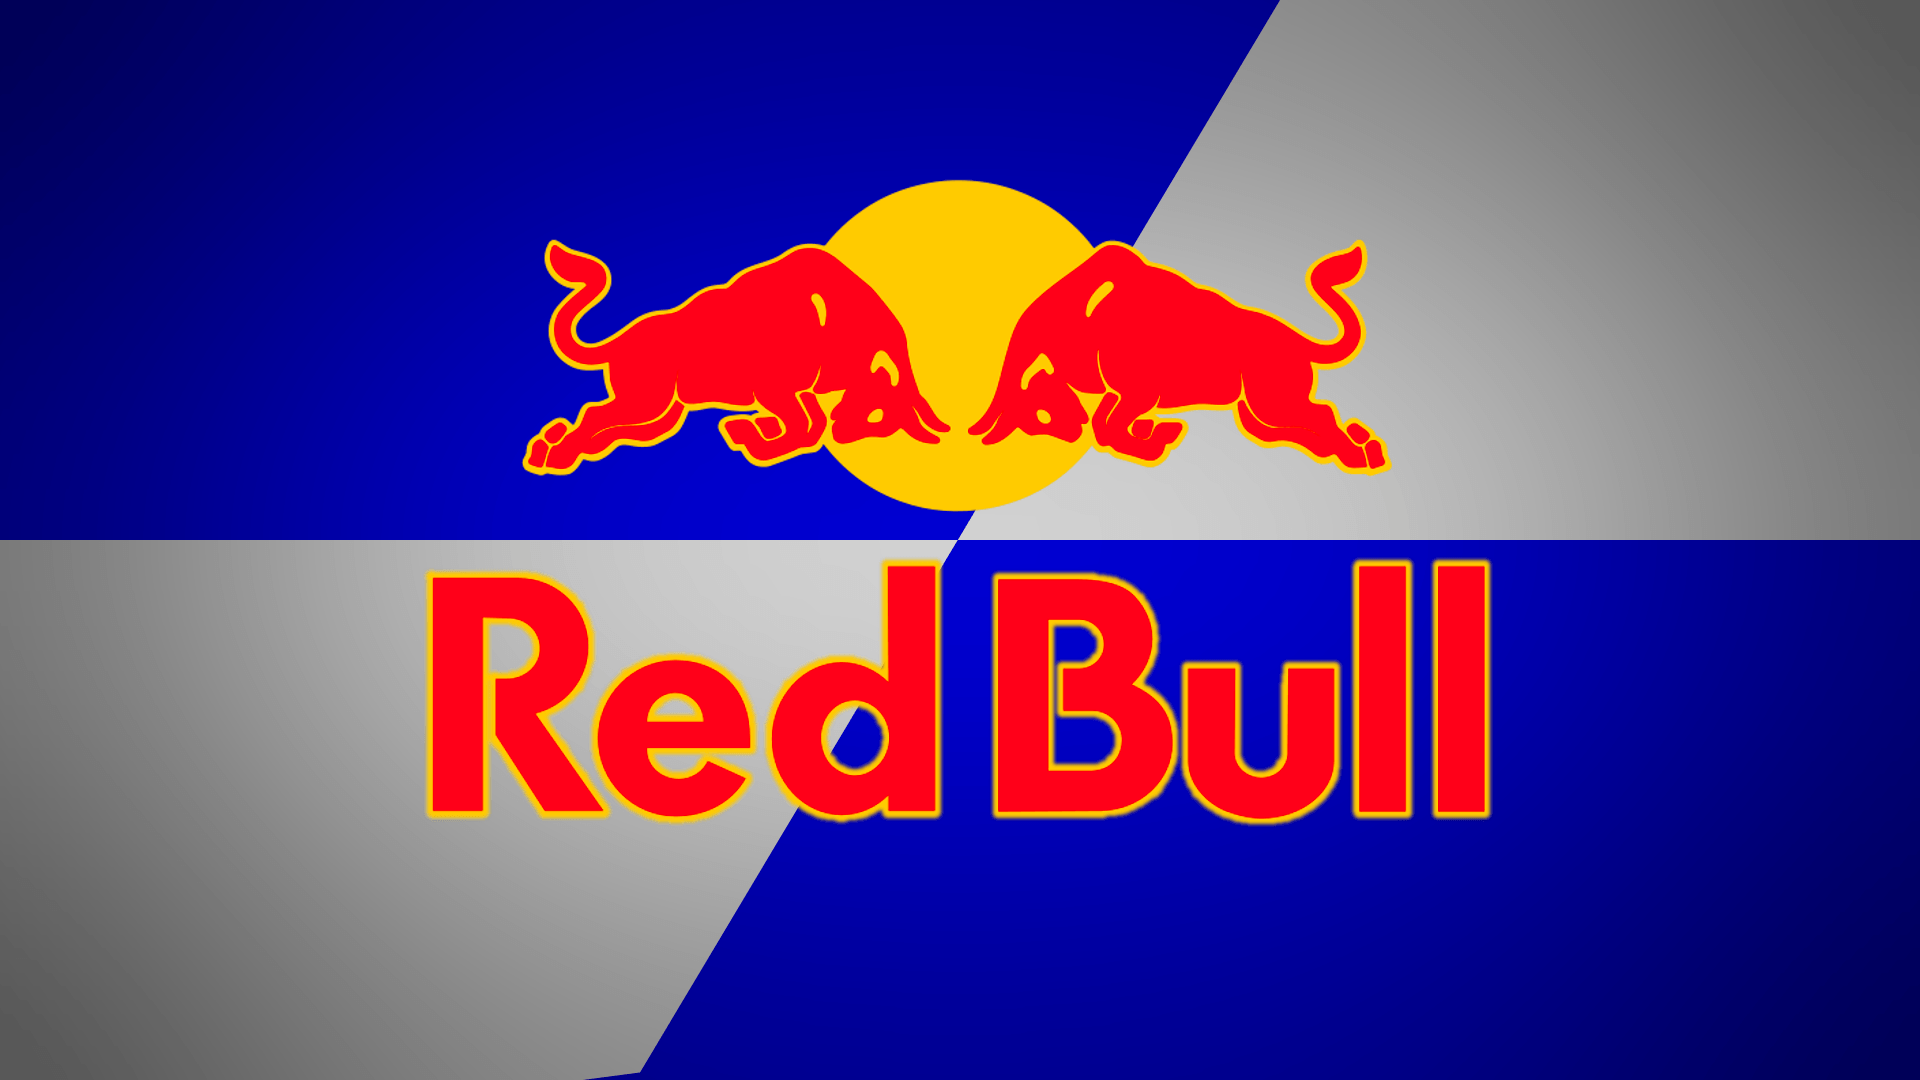 redbull logo png Large Image